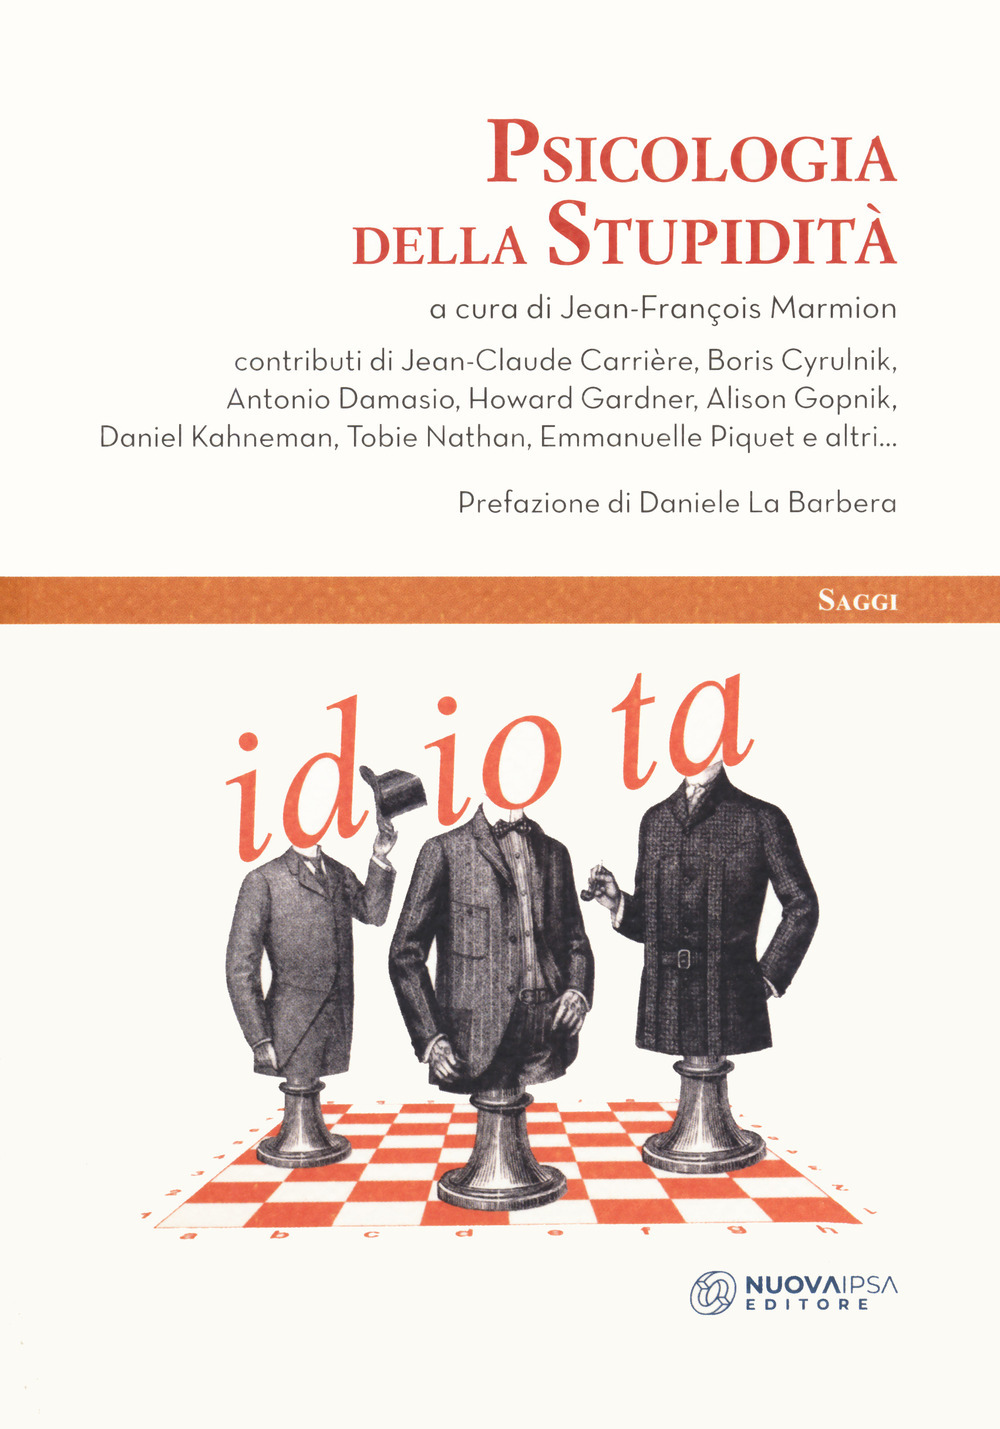 Libri Psicologia Della Stupidita NUOVO SIGILLATO, EDIZIONE DEL 13/02/2020 SUBITO DISPONIBILE